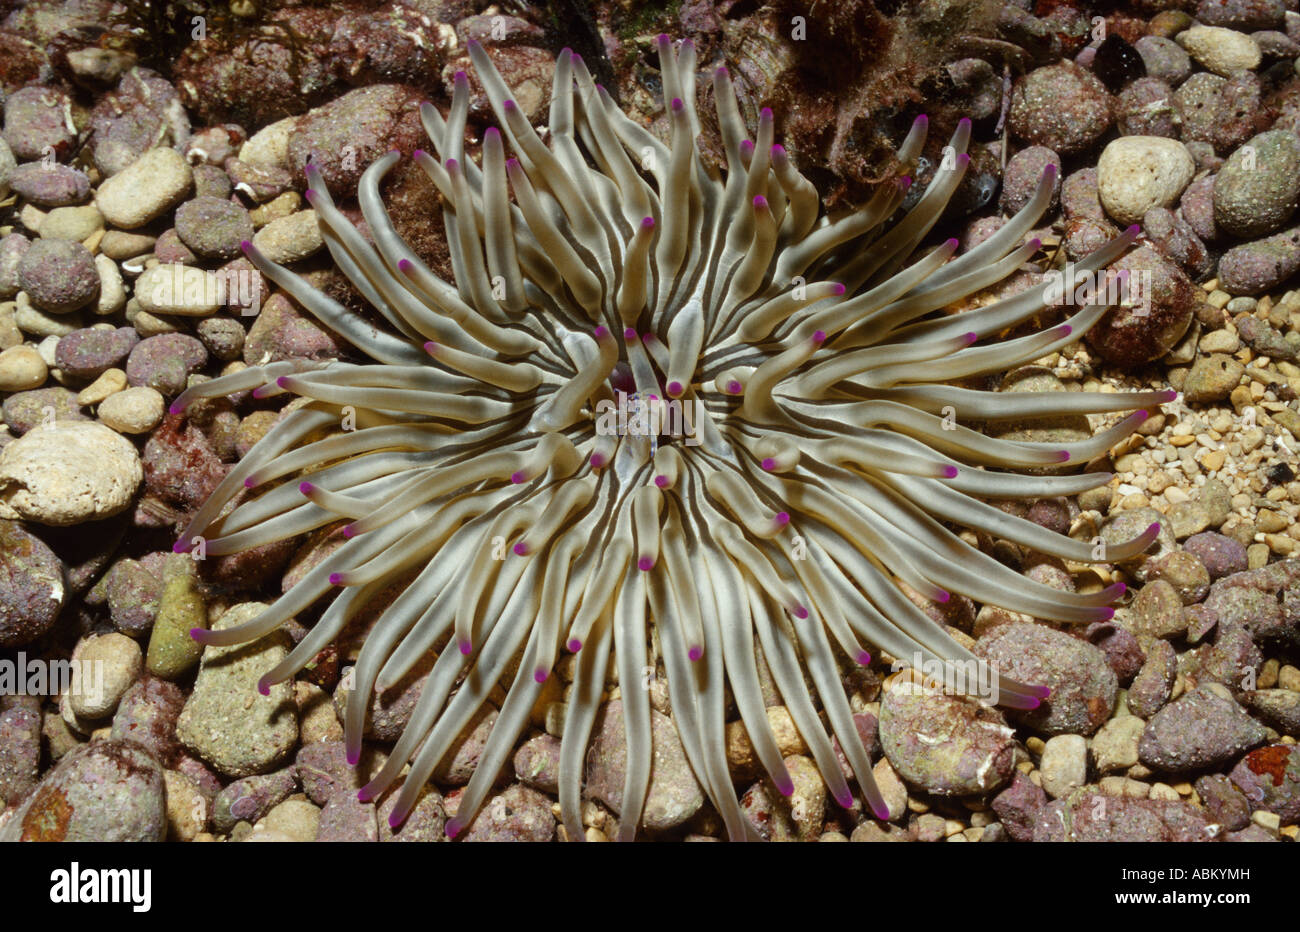 Seeanemone auf dem Meeresboden, Condylactis Aurantiaca, Kroatien Adria Mittelmeer Stockfoto